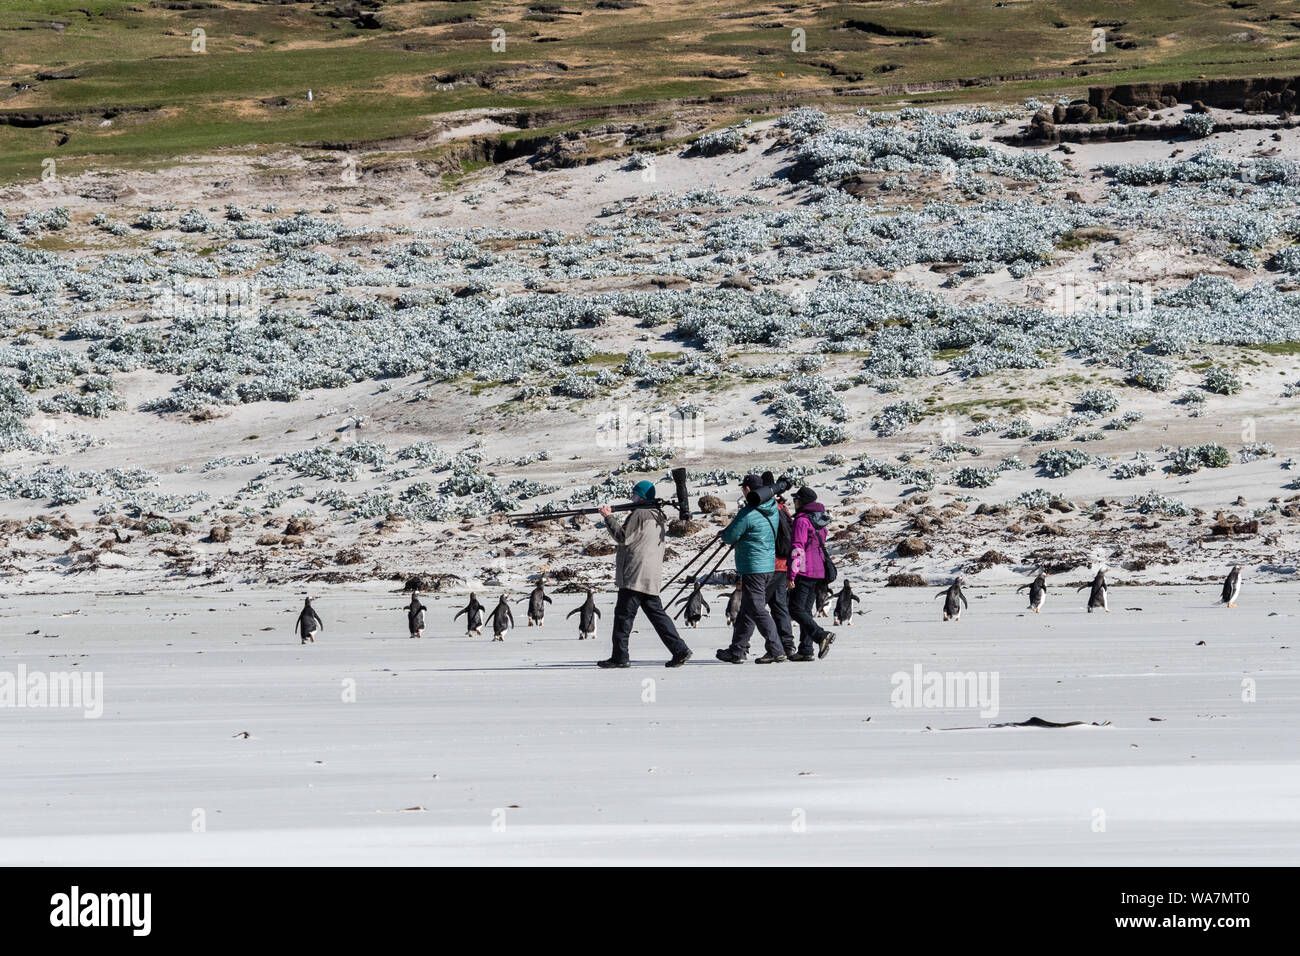 Fotografi, turisti, con telecamere e cavalletti camminando sulla spiaggia con i pinguini Gentoo, il collo, Saunders Island, nelle Isole Falkland Foto Stock